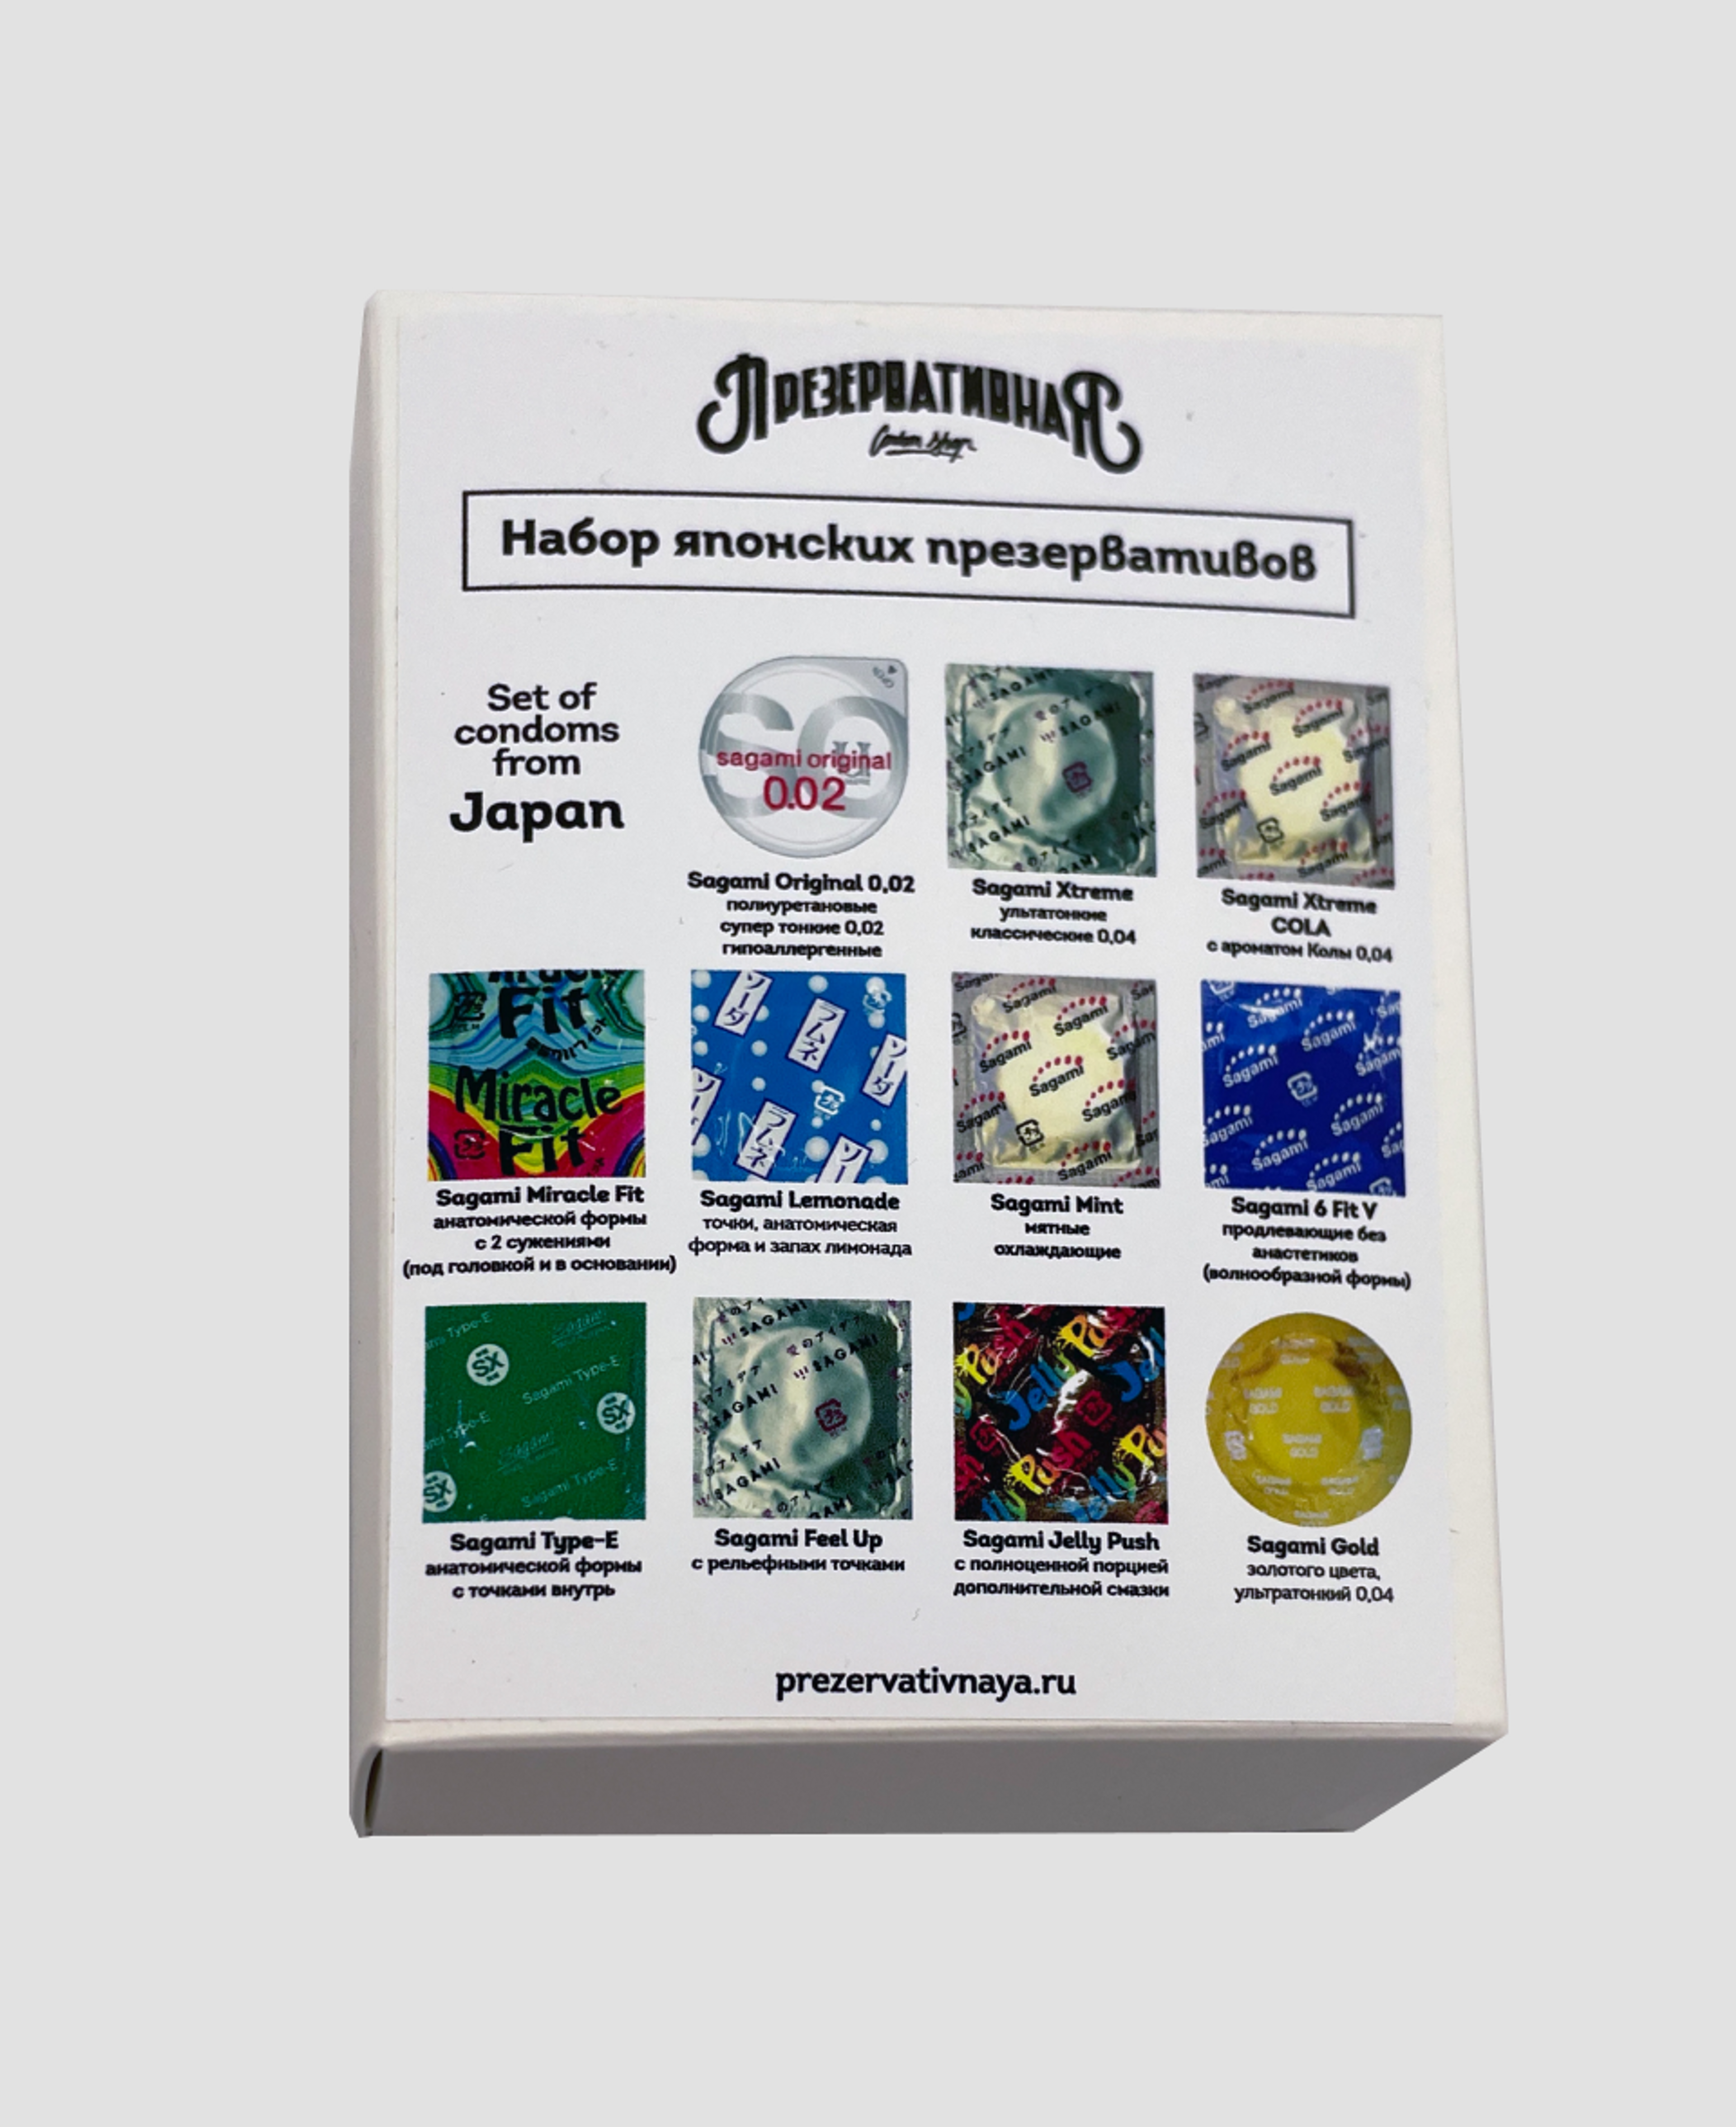 Набор японских презервативов Sagami